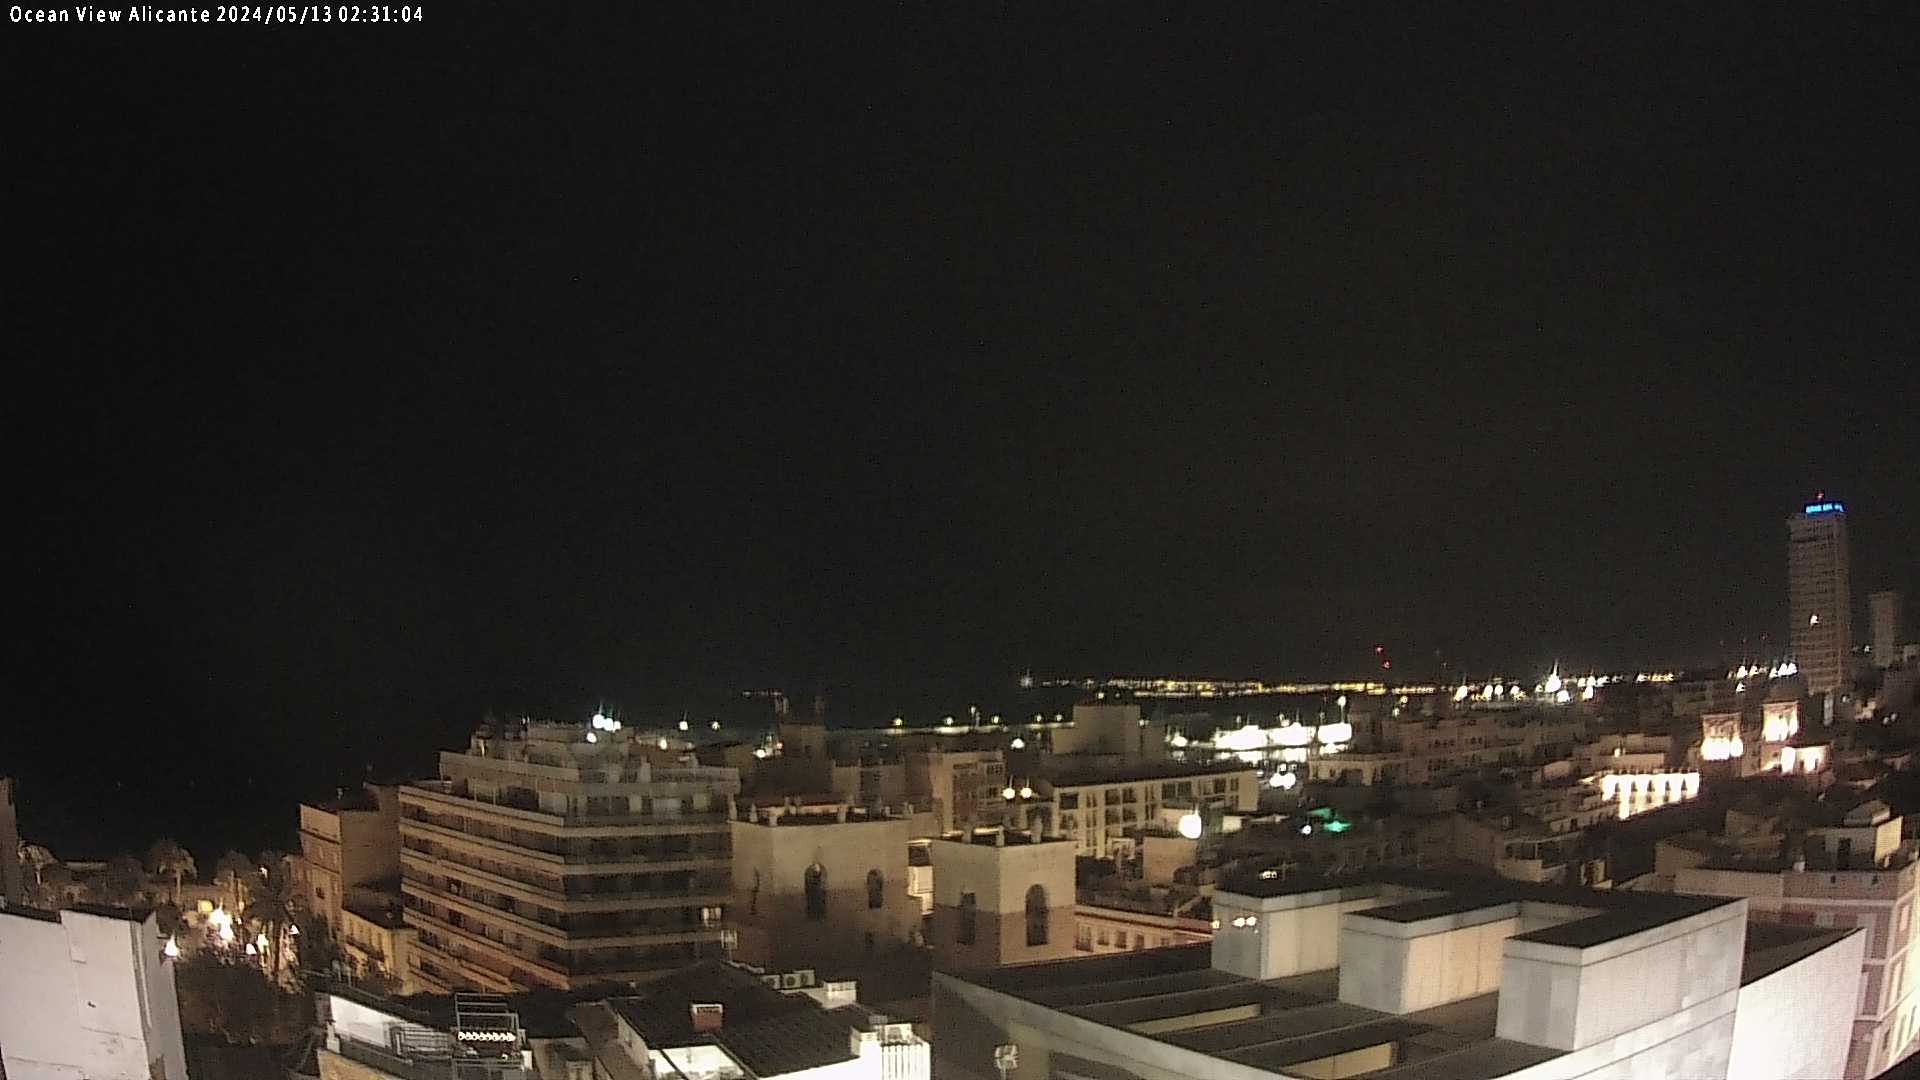 Alicante Fri. 02:31